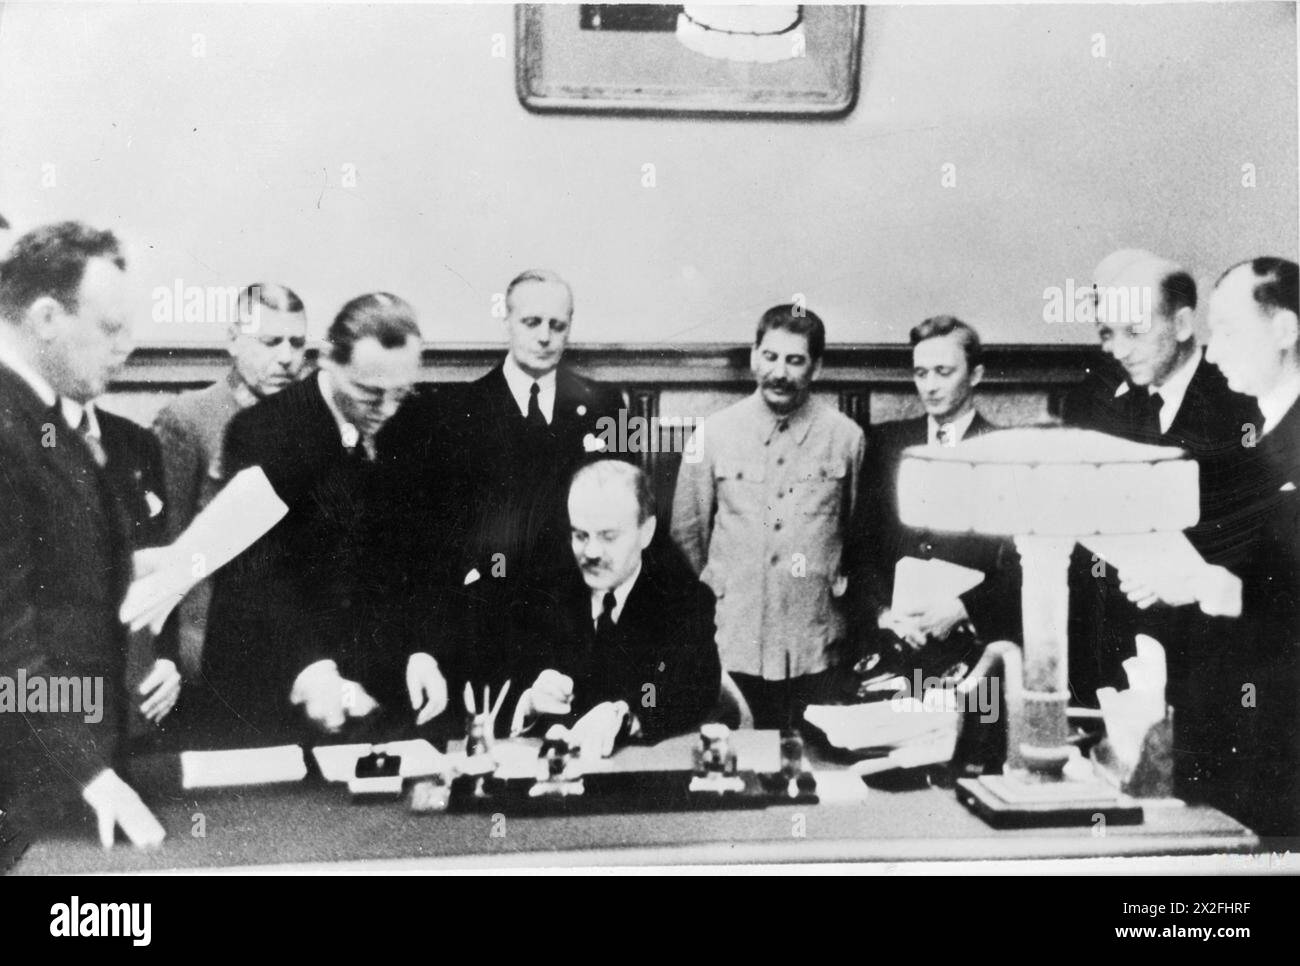 IL PATTO DI NON AGGRESSIONE NAZISTA-SOVIETICA (IL PATTO RIBBENTROP-MOLOTOV) - il ministro sovietico degli affari esteri, Vyacheslav Molotov, firma il patto di non aggressione nazista-sovietica (noto anche come patto Molotov-Ribbentrop) alla presenza del ministro degli Esteri tedesco Joachim von Ribbentrop e del leader sovietico Josef Stalin (entrambi immediatamente dietro), a Mosca, 28 settembre 1939 Molotov, Vyacheslav Mikhailovich, Stalin, Joseph, Ribbentrop, Joachim von, Shaposhnikov, Boris Mikhailovitch Foto Stock